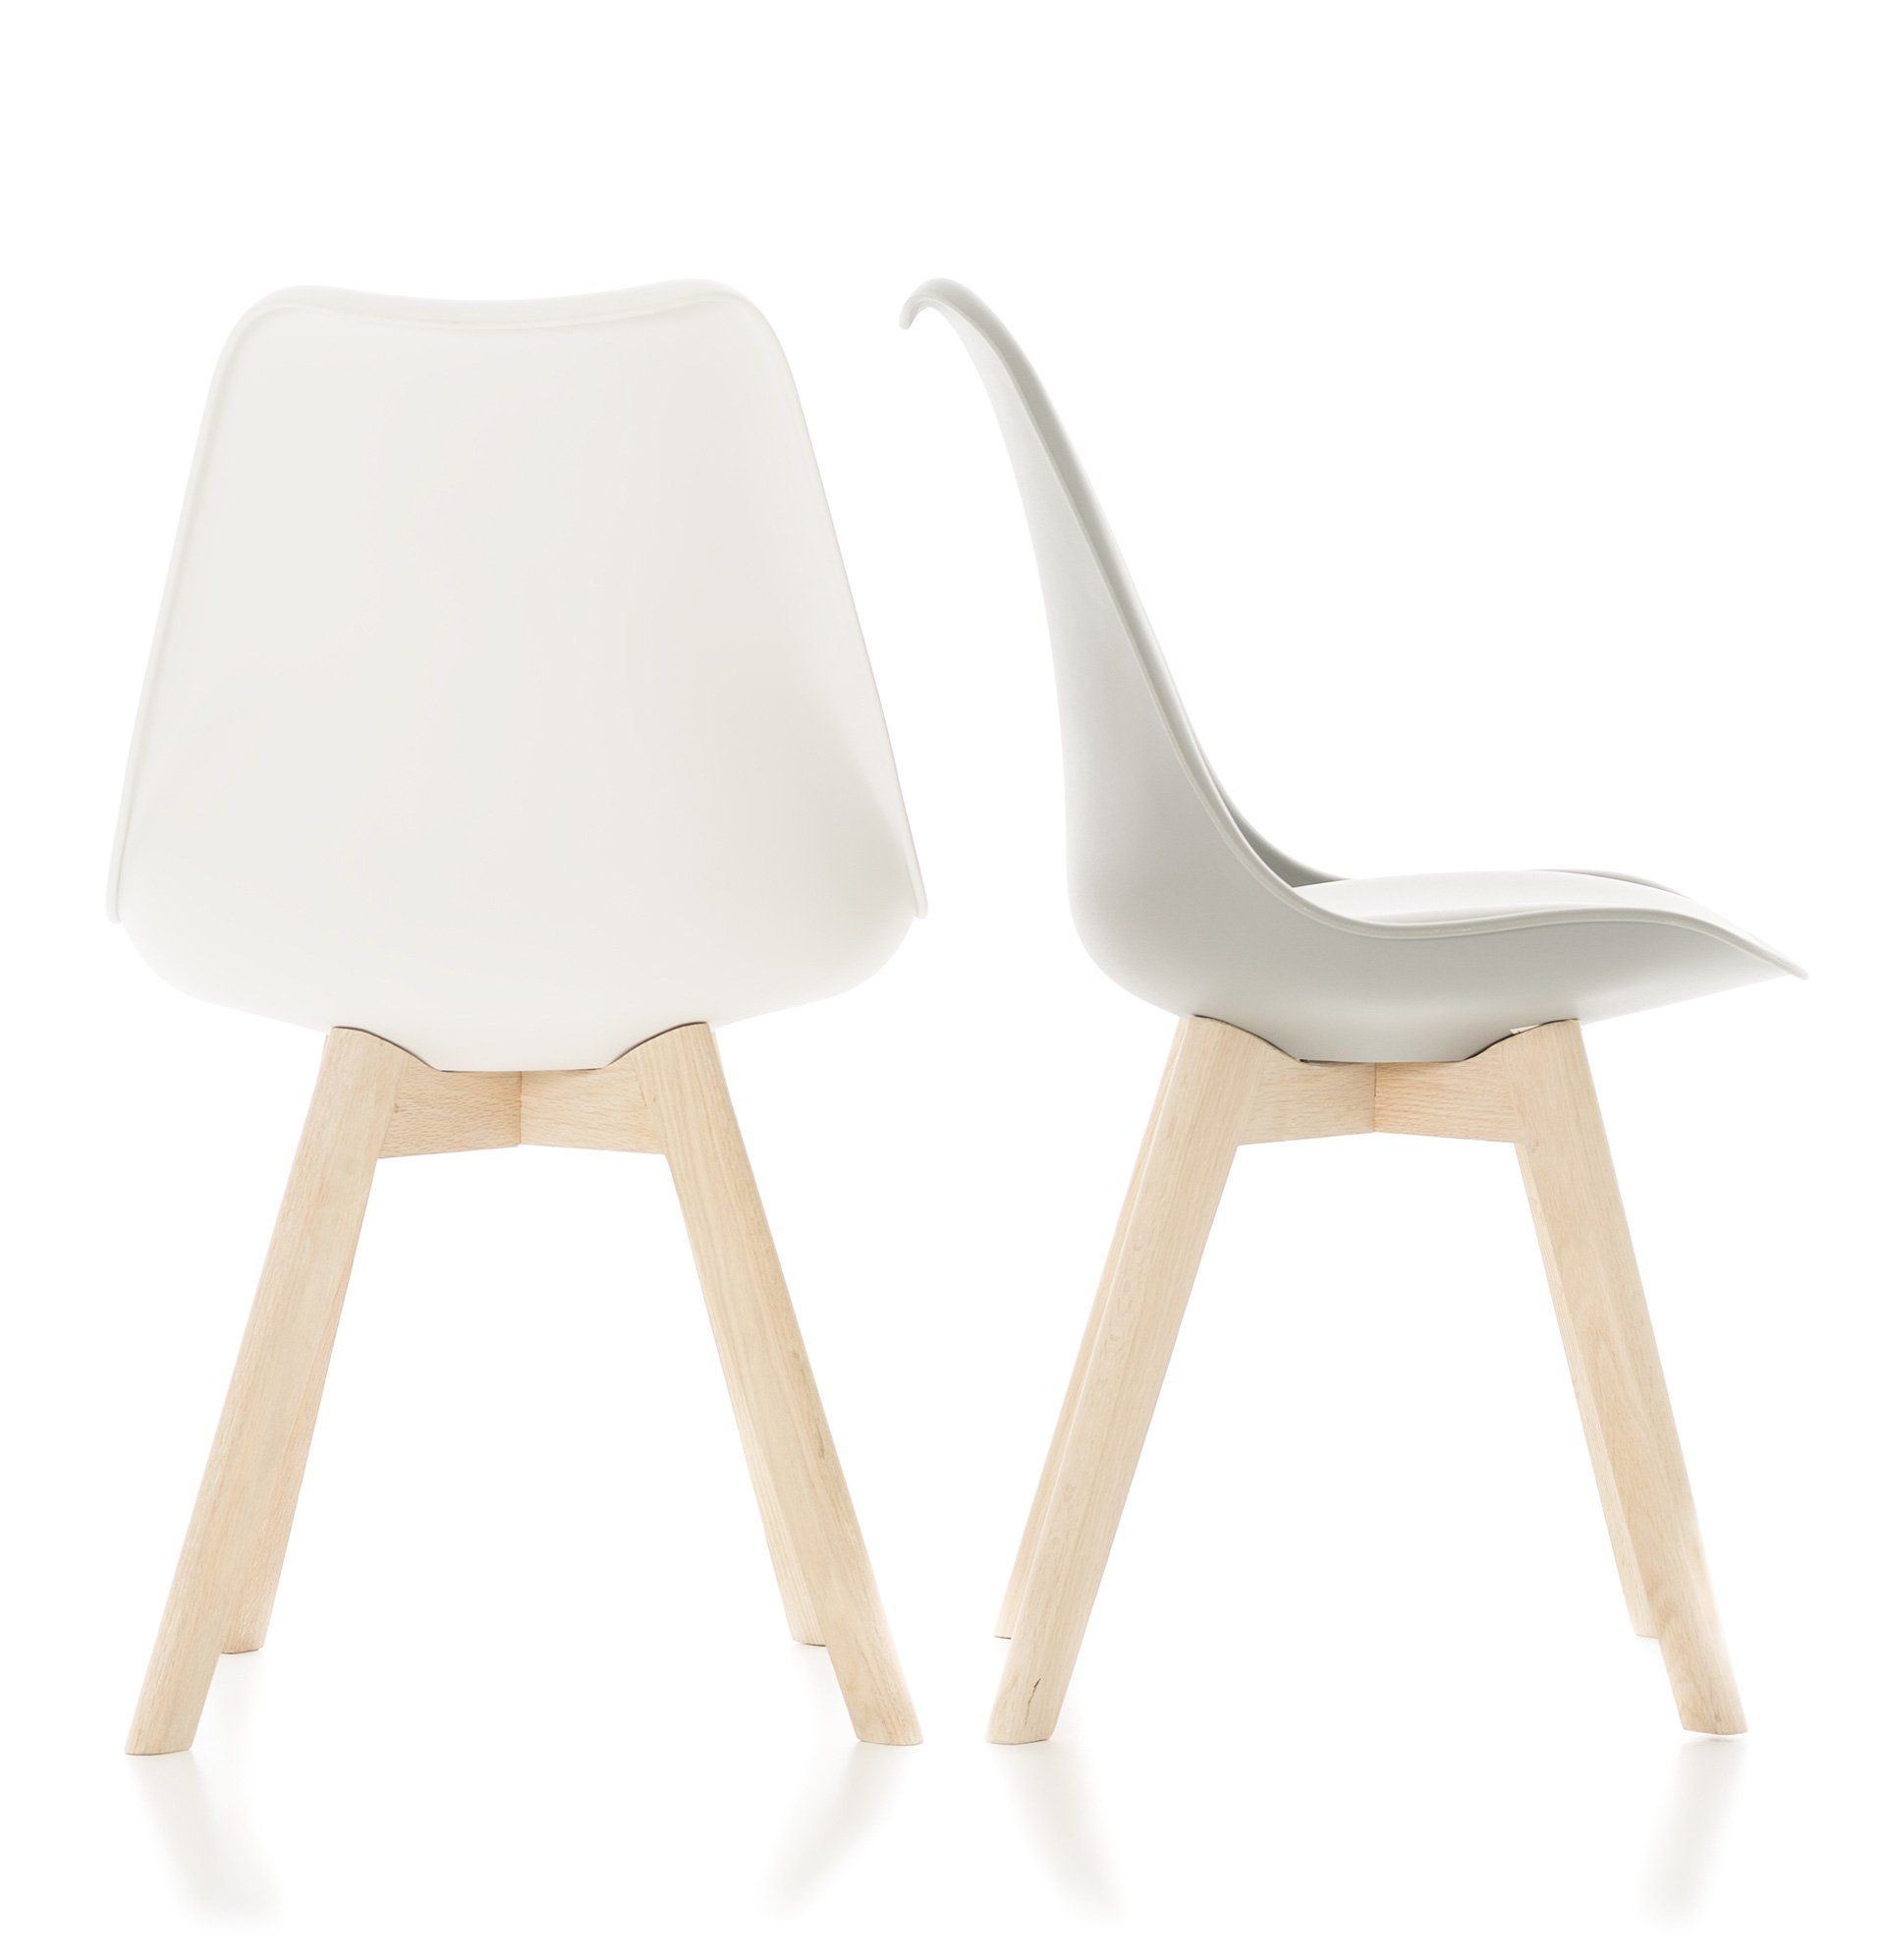 Produktvisualisierung von Stühle mit Holzbeinen.